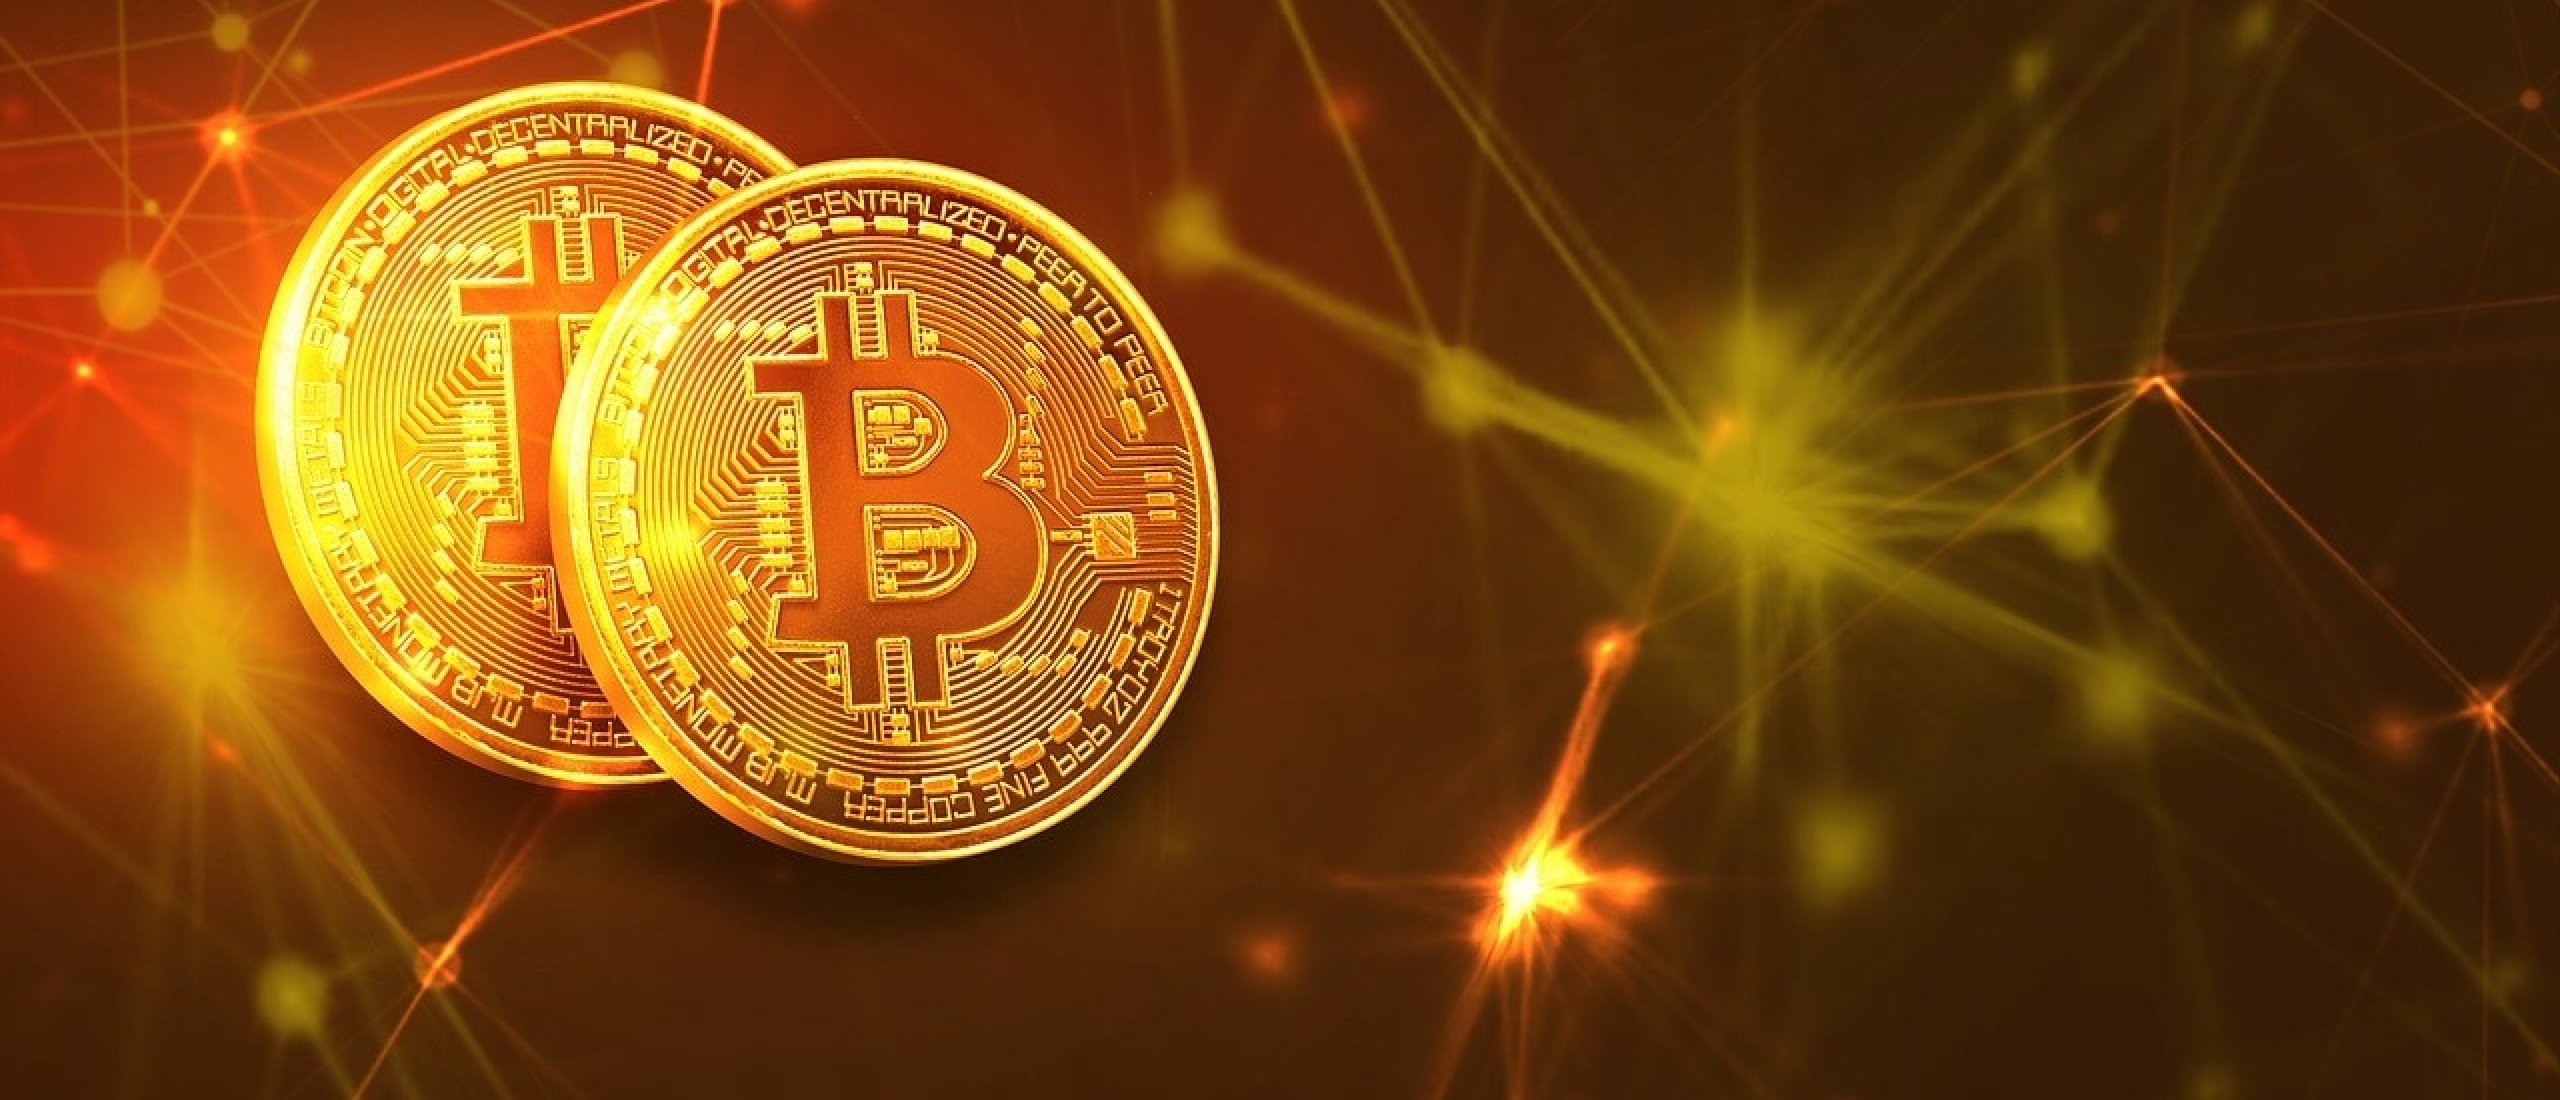 Bitcoin minen in 2023: slim en winstgevend?